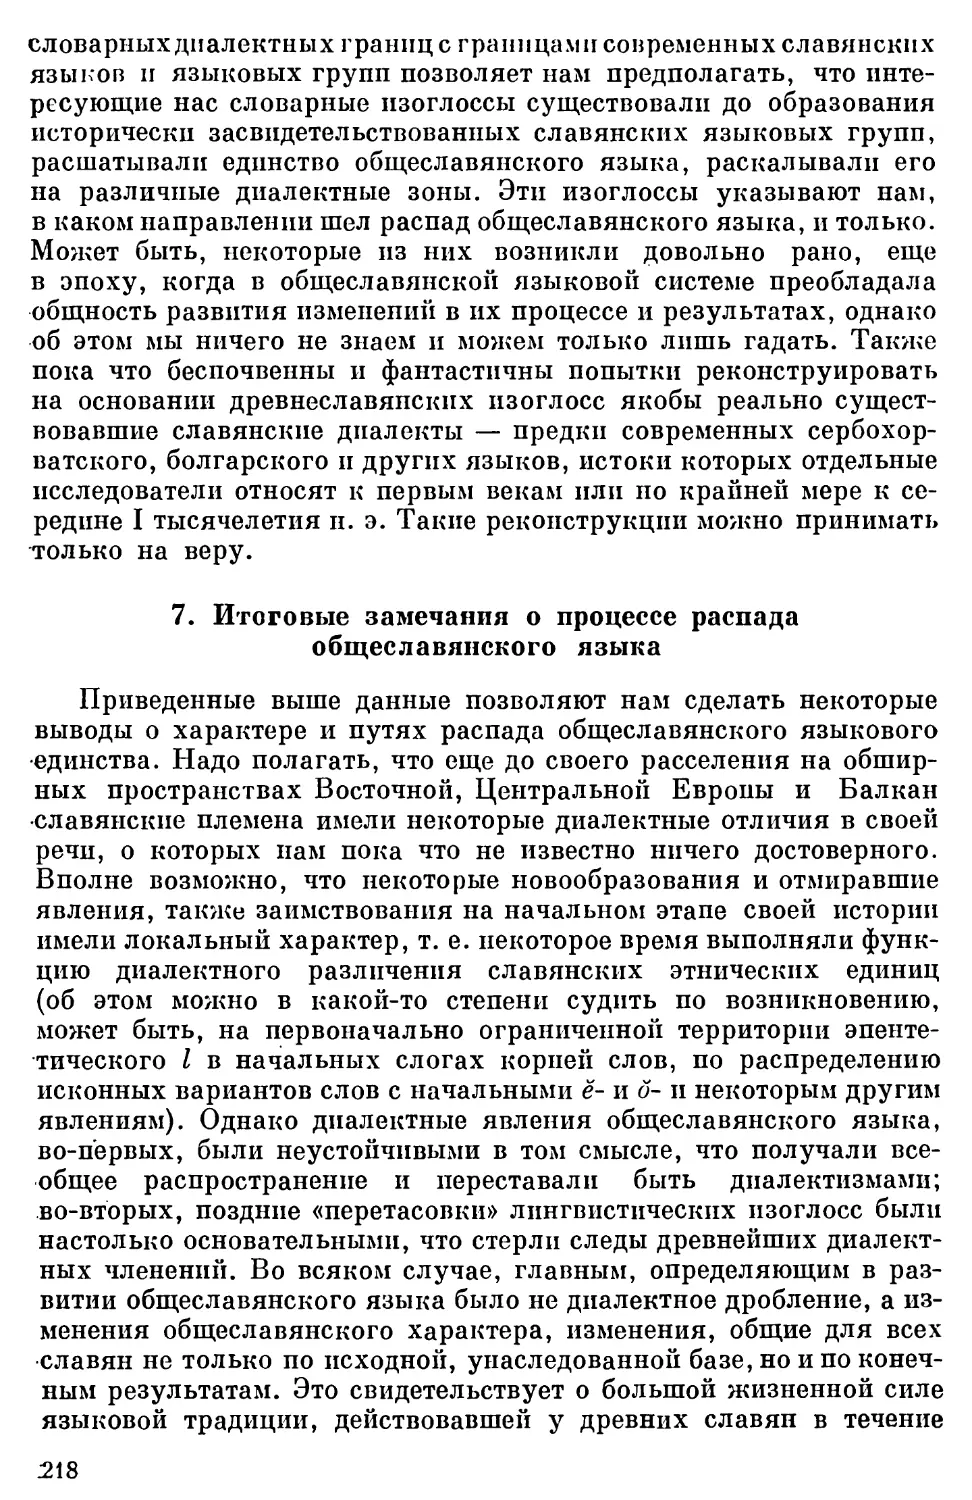 7. Итоговые замечания о процессе распада общеславянского языка